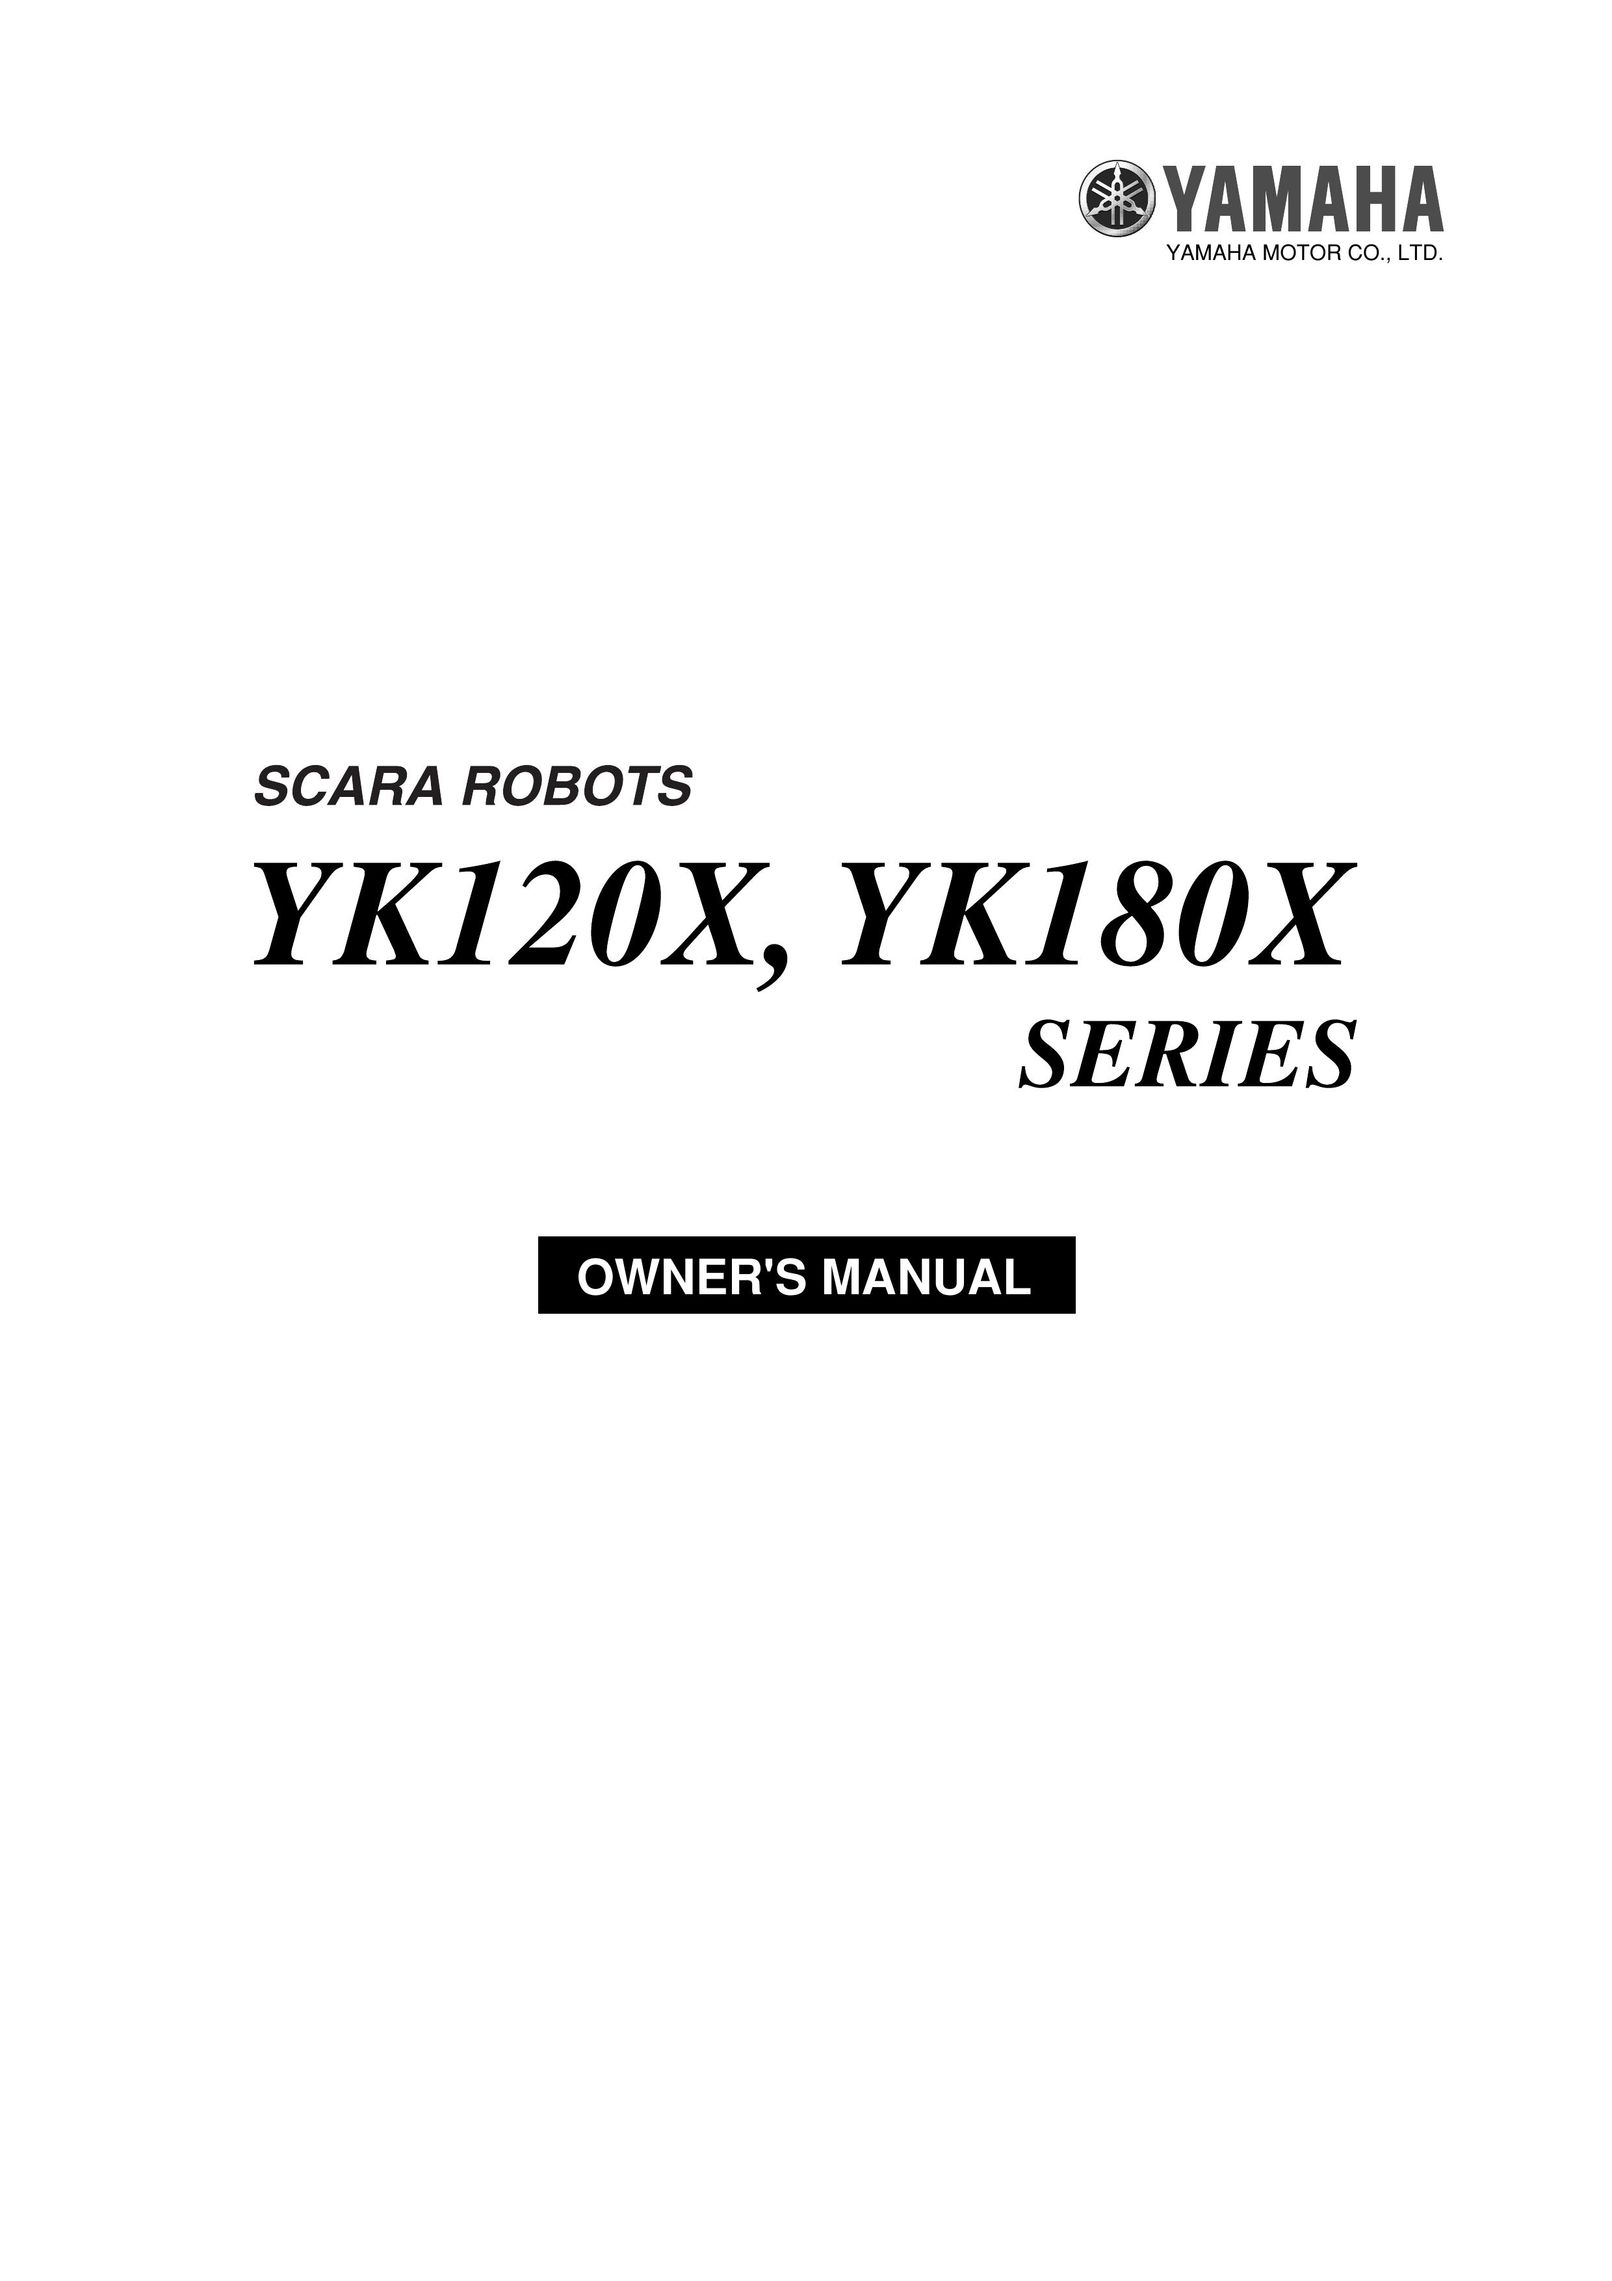 Yamaha YK120X Robotics User Manual